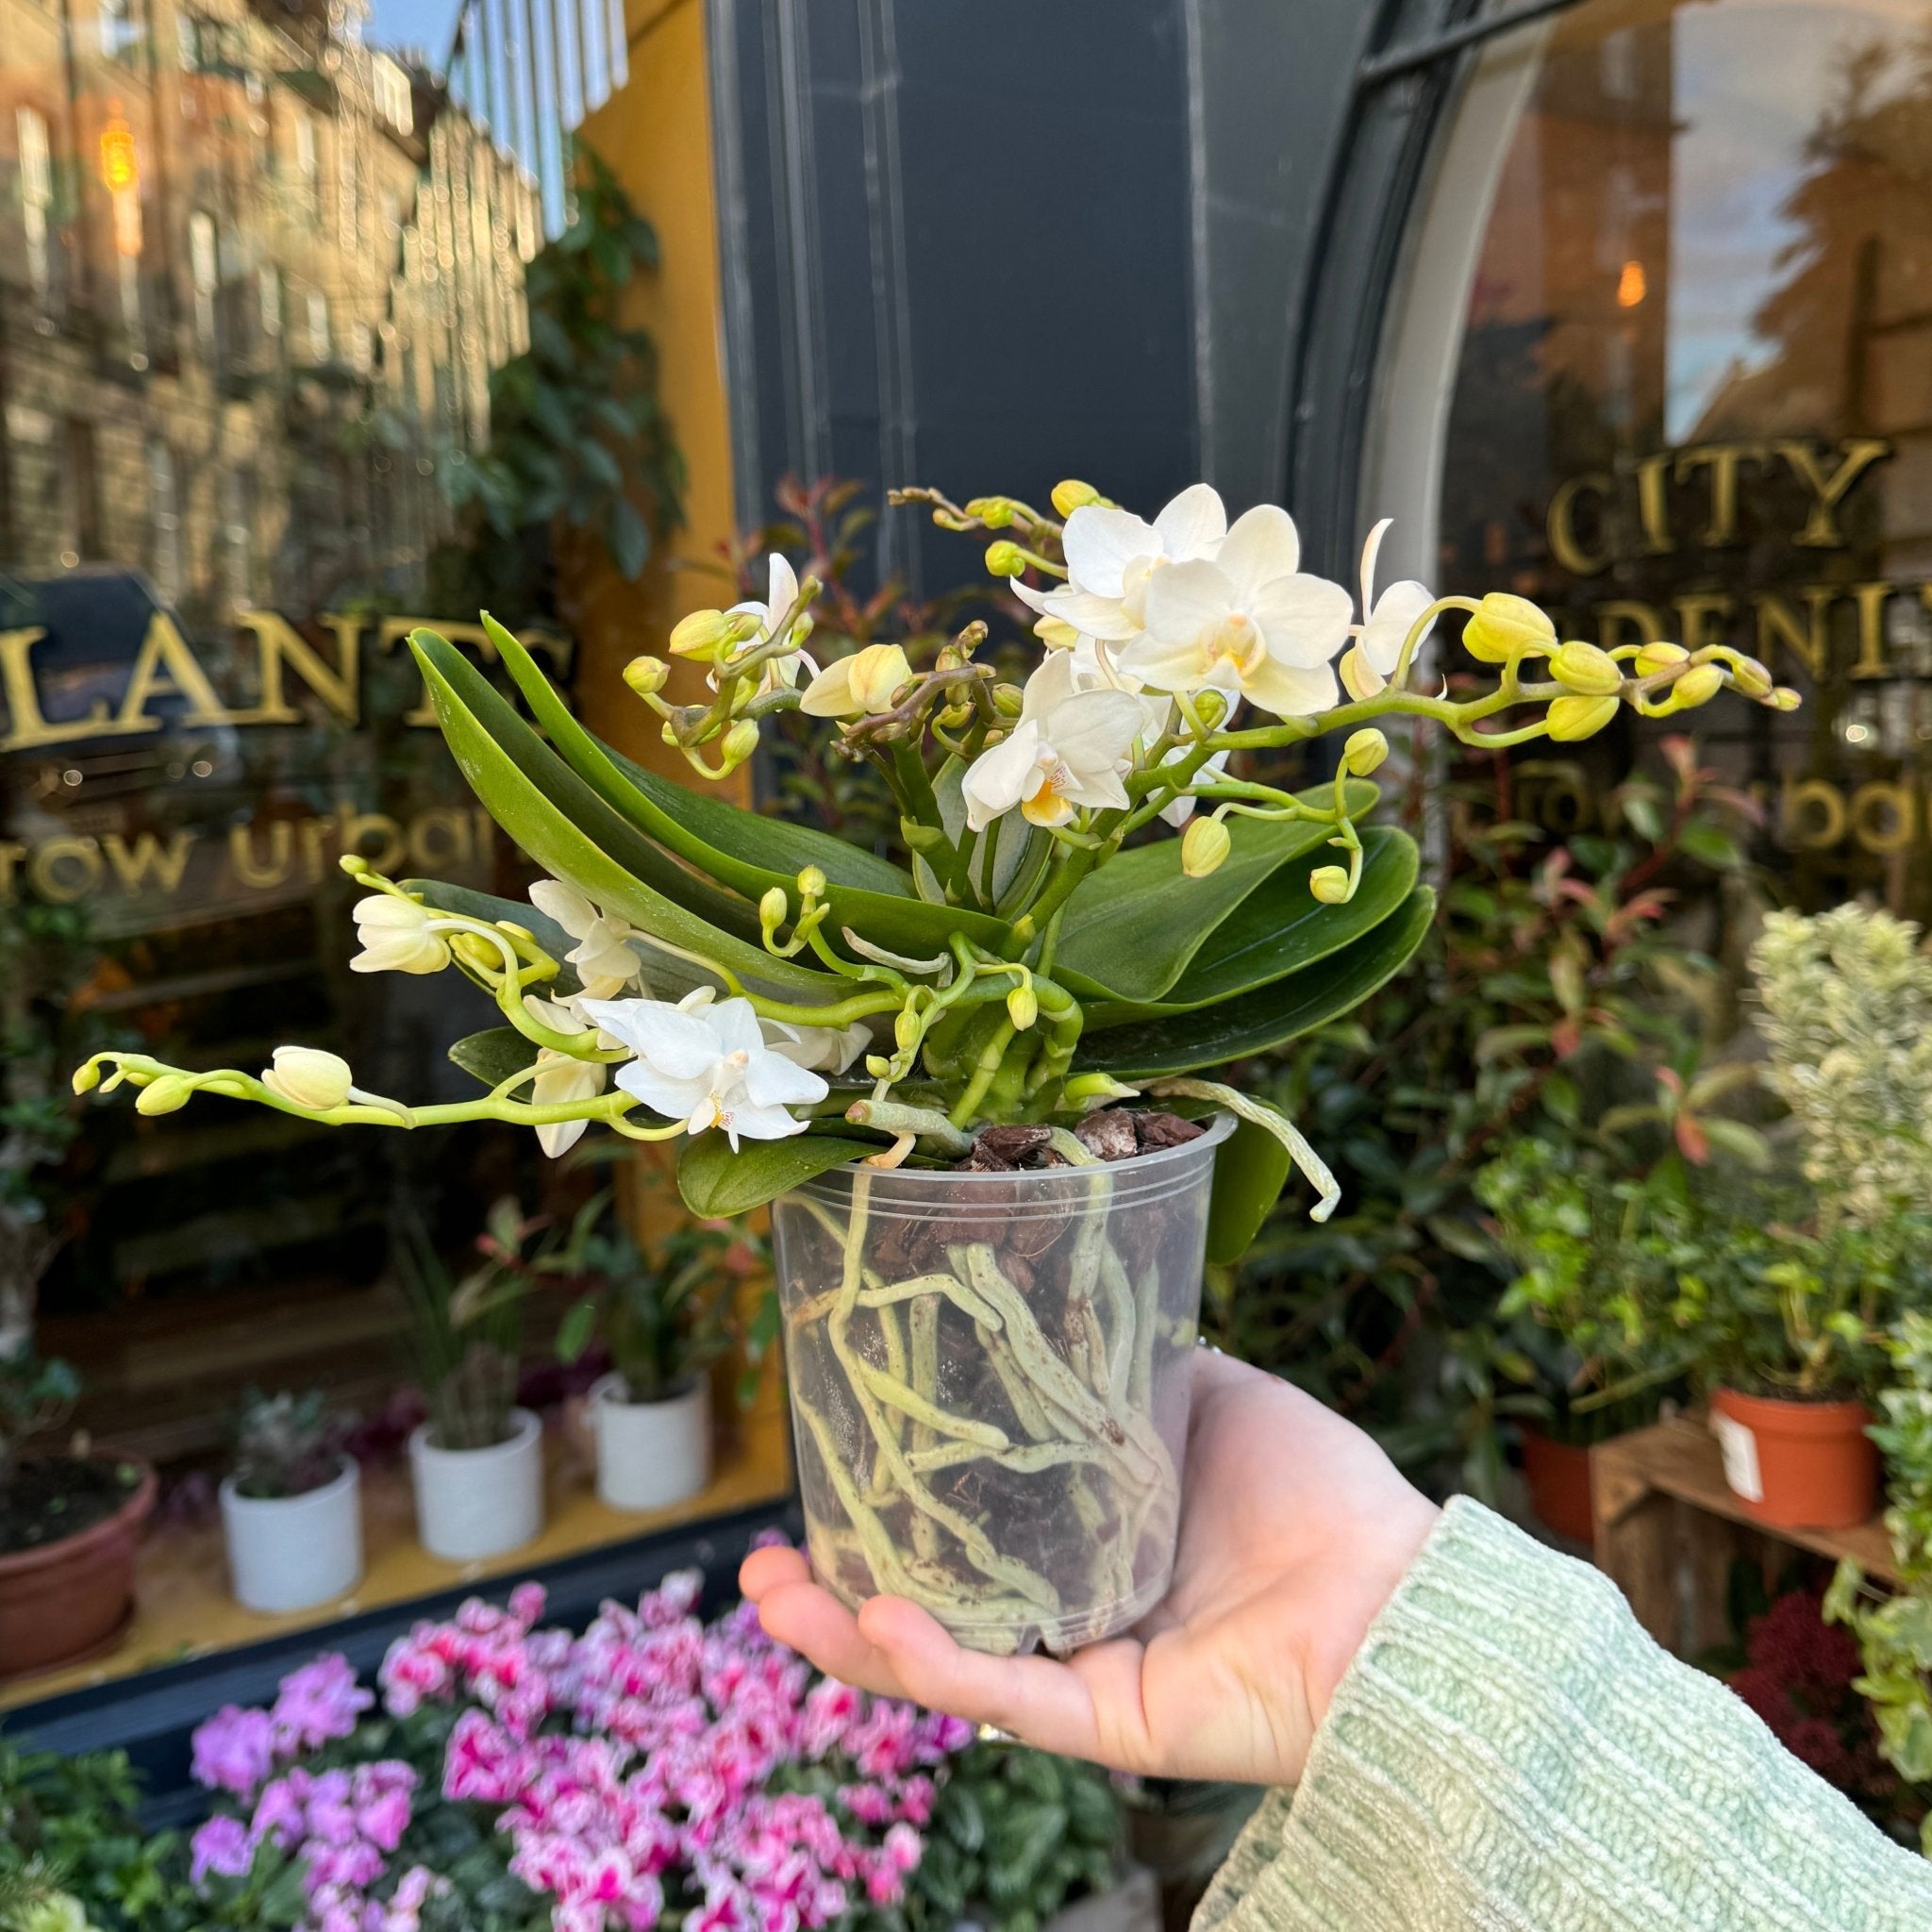 Phalaenopsis ‘Whitney' - grow urban. UK